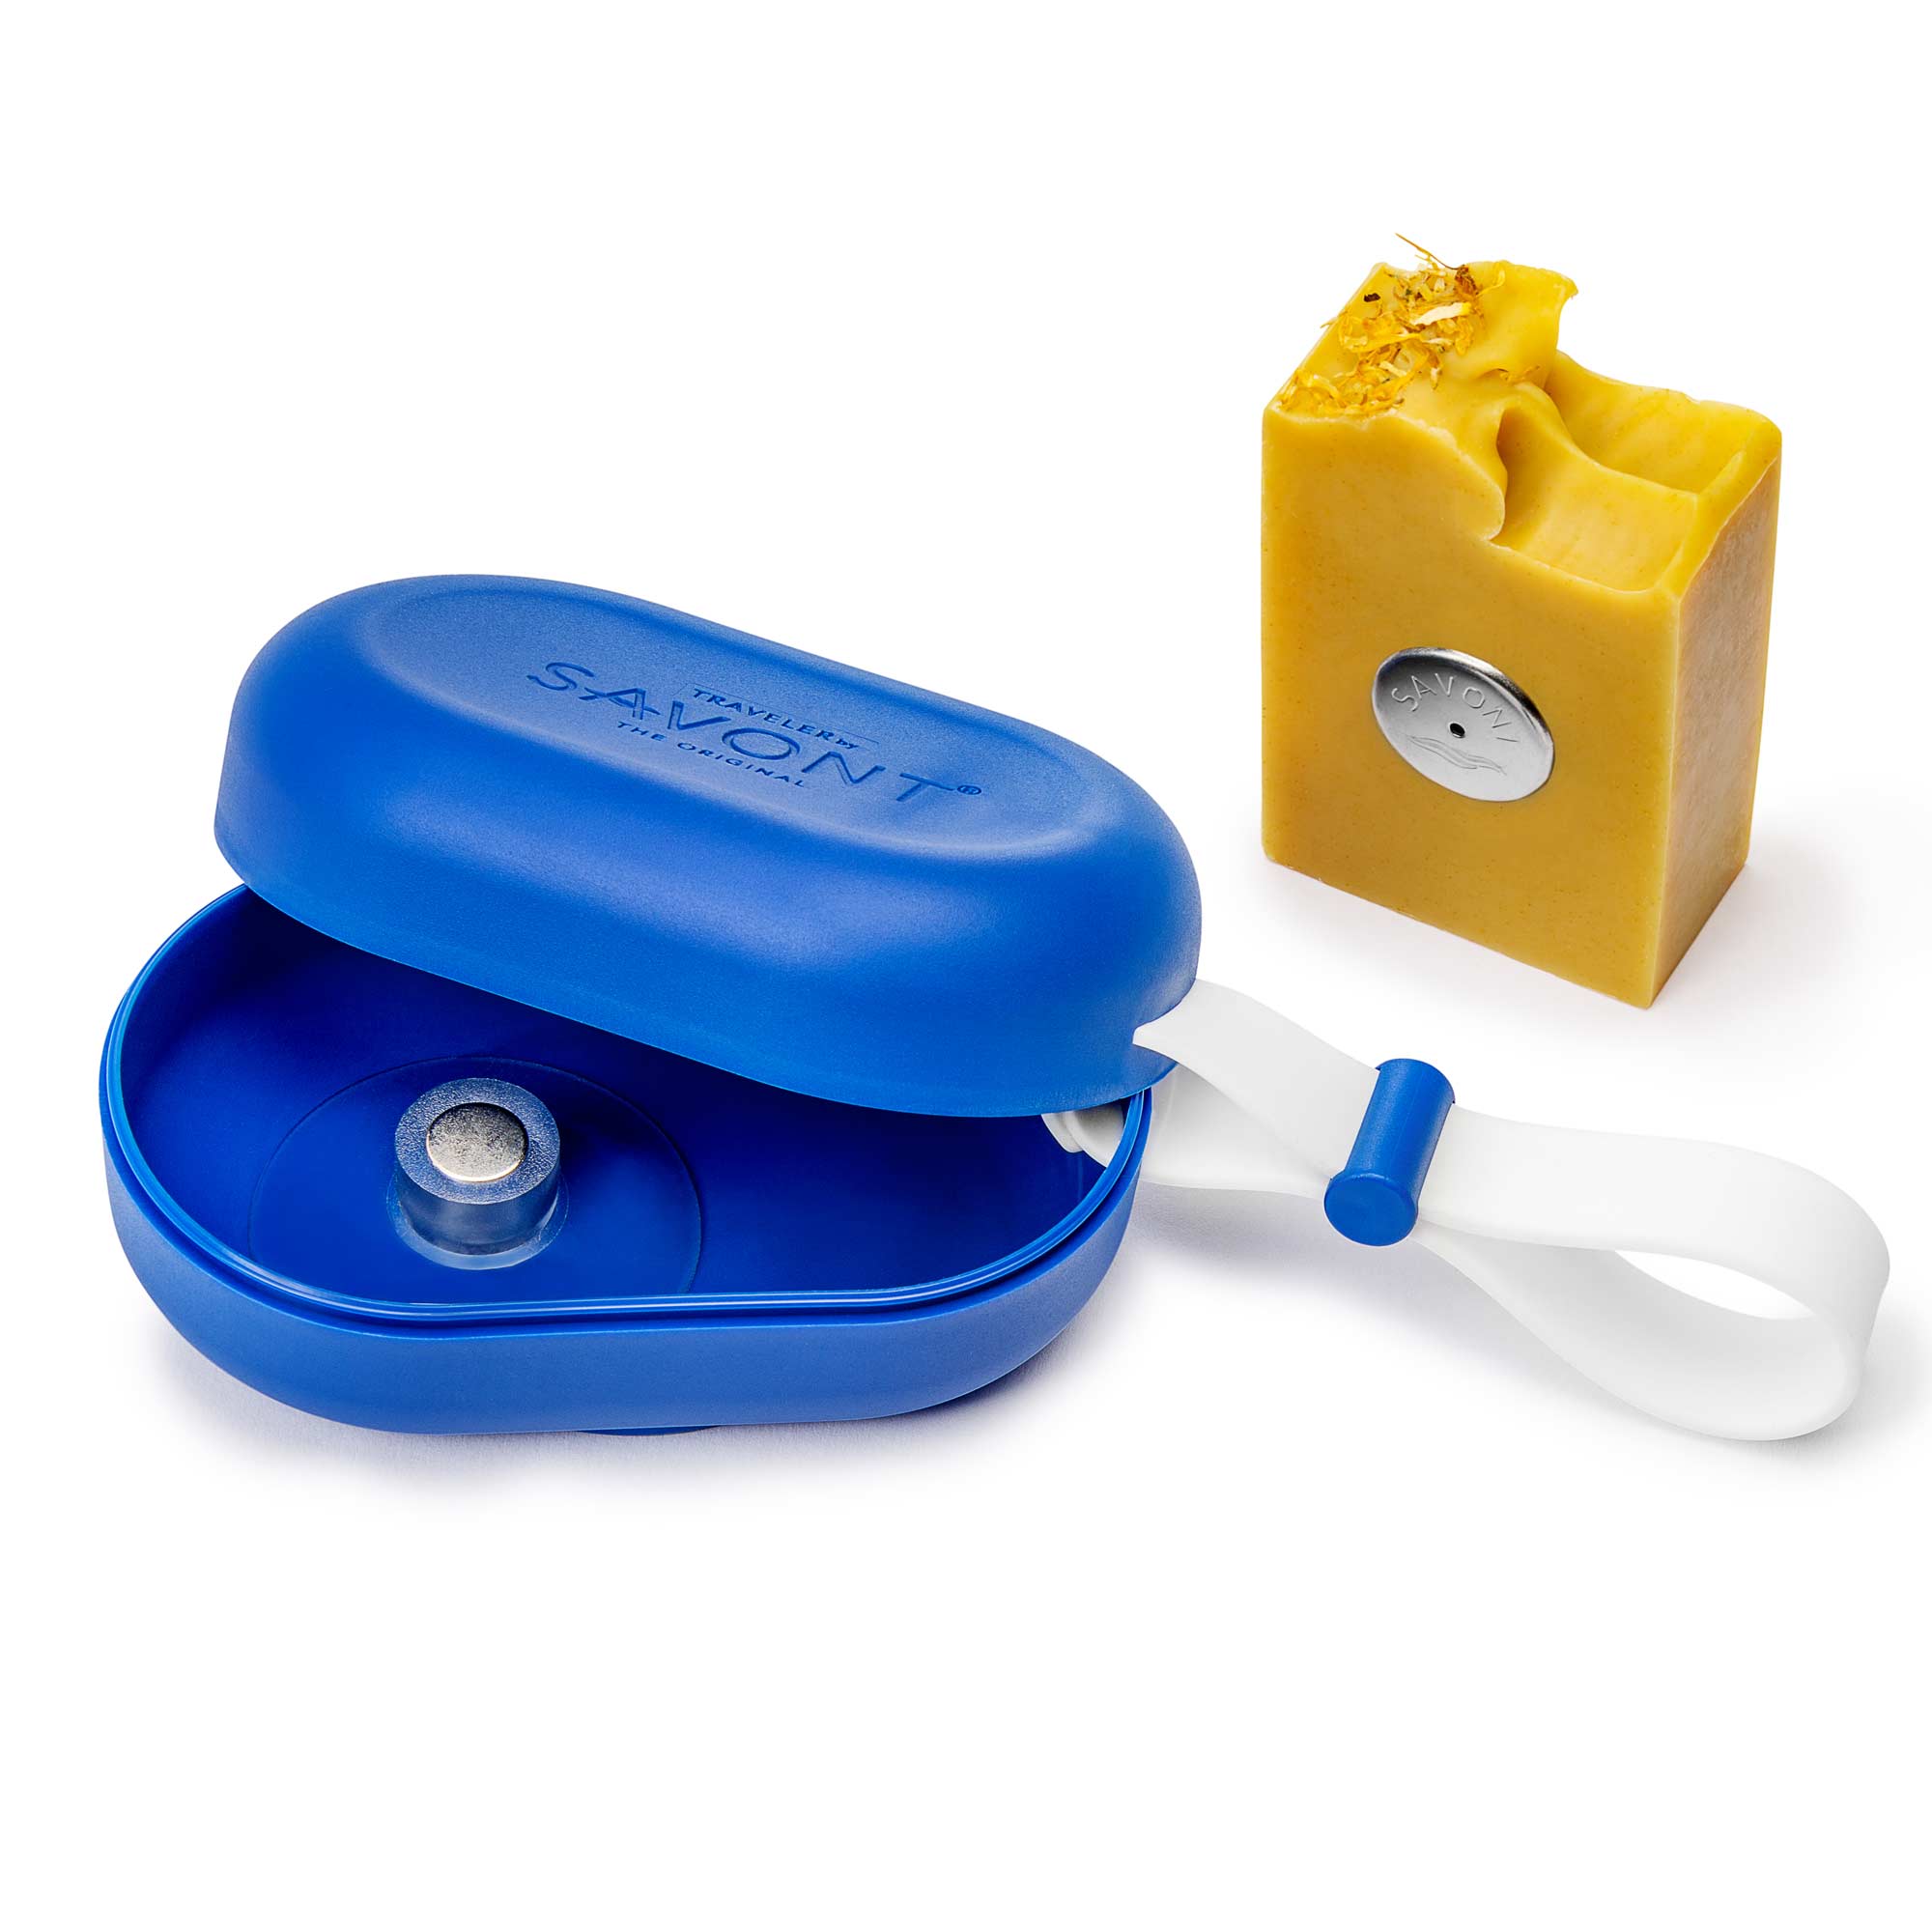 Seifendose für unterwegs mit integriertem Seifenhalter mit Magnet für feste Seife